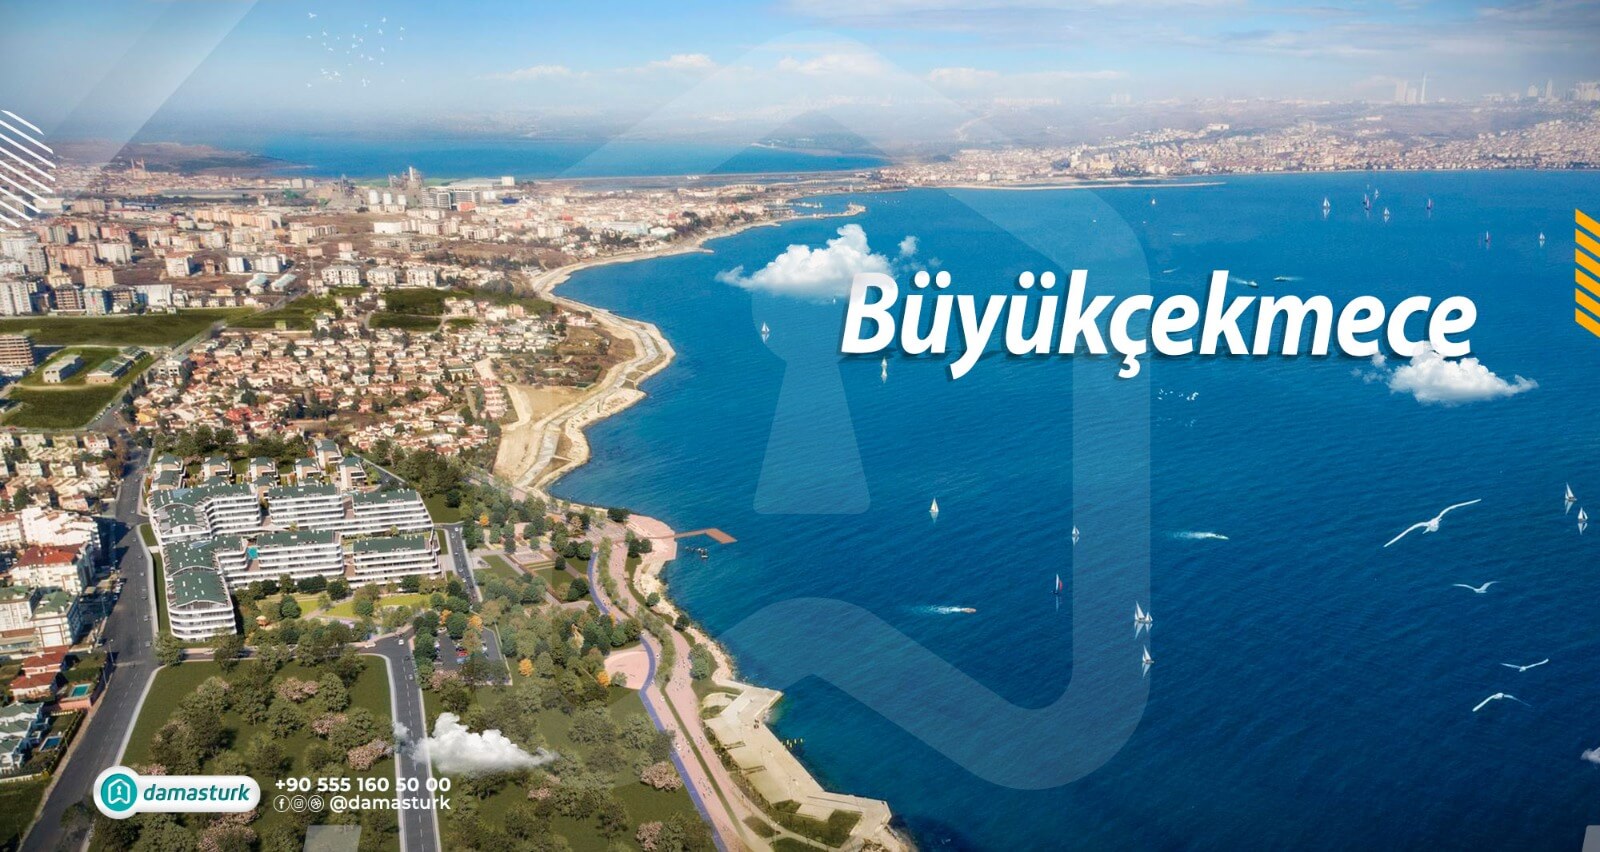 Découvrez les principaux sites et lieux à visiter à Büyükçekmece 2021